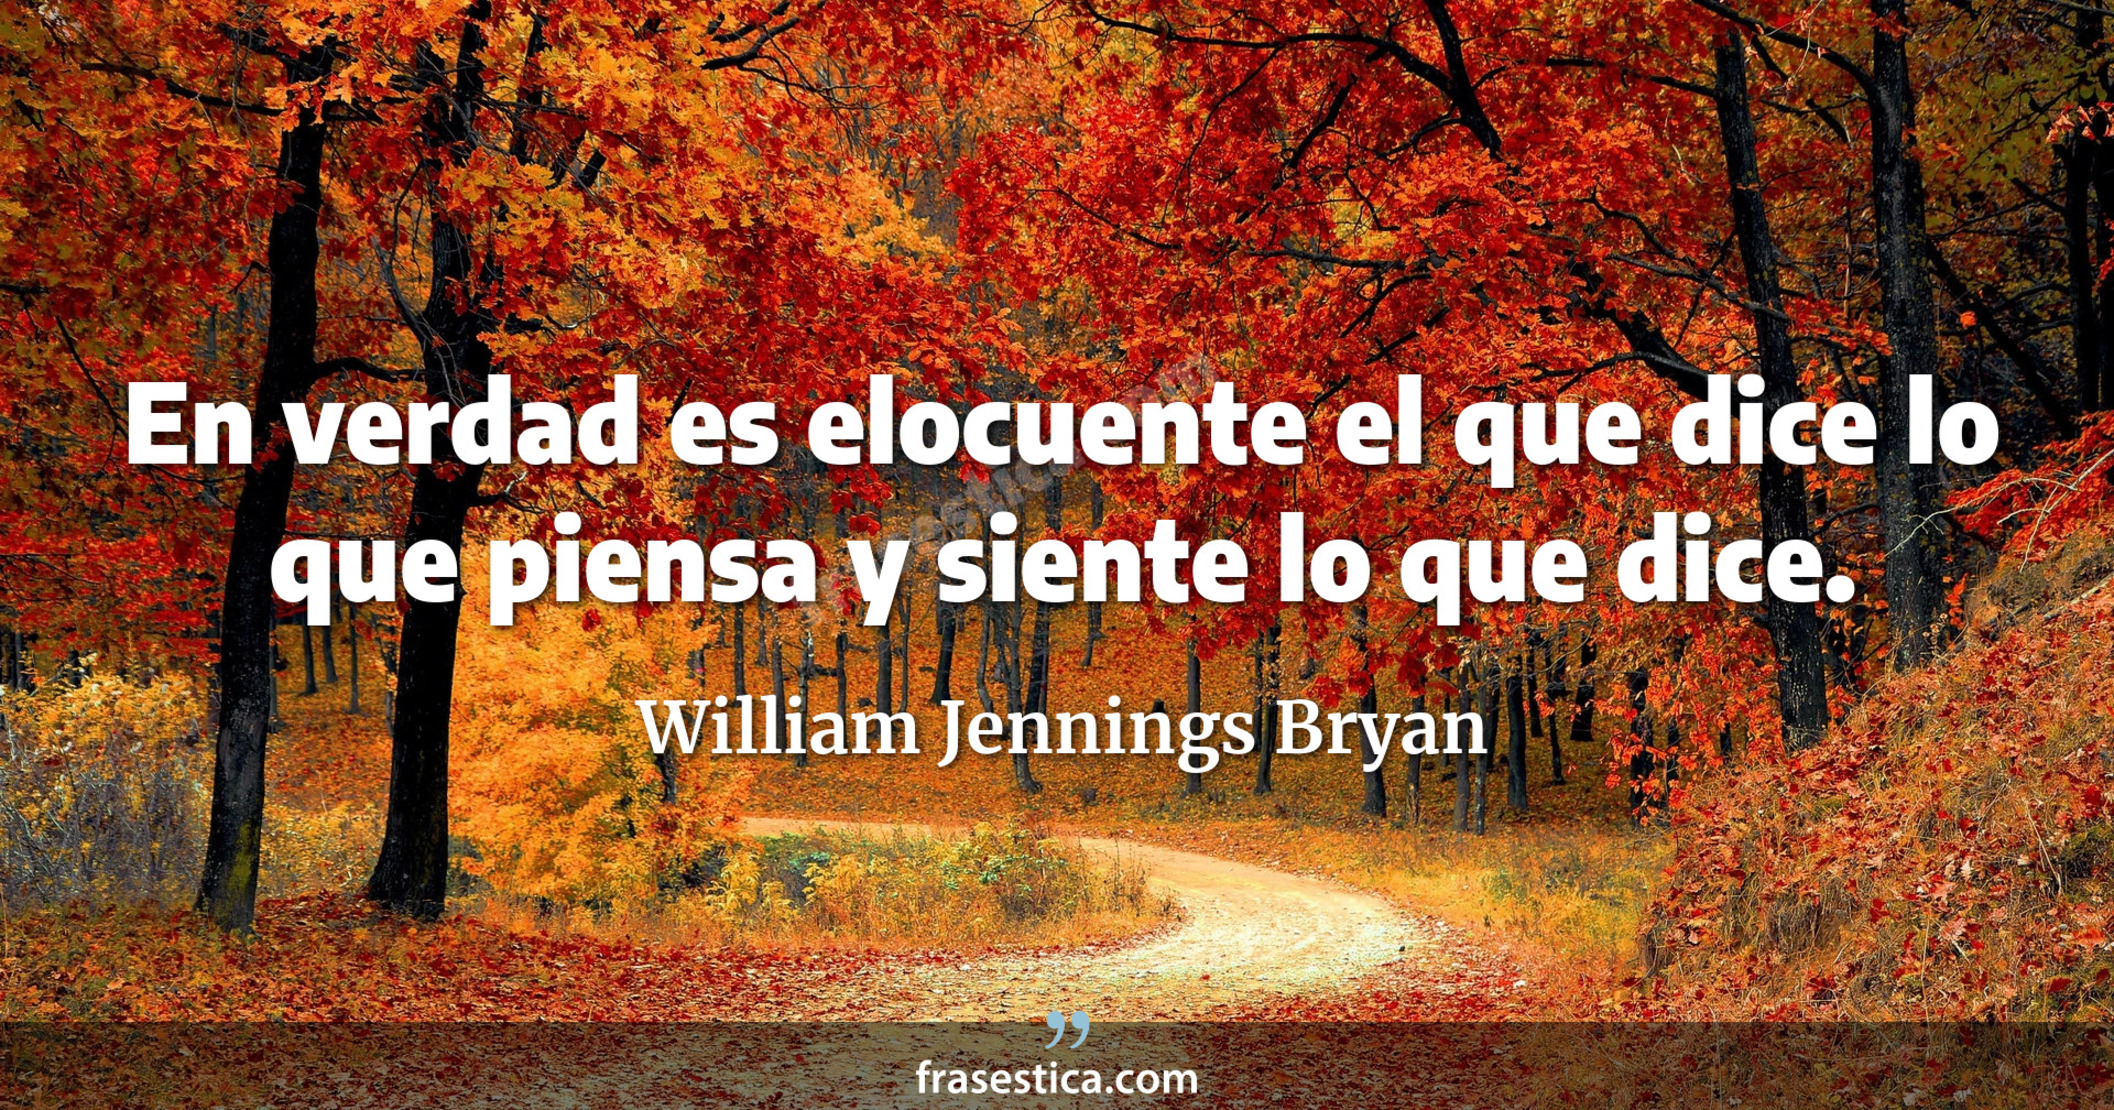 En verdad es elocuente el que dice lo que piensa y siente lo que dice. - William Jennings Bryan